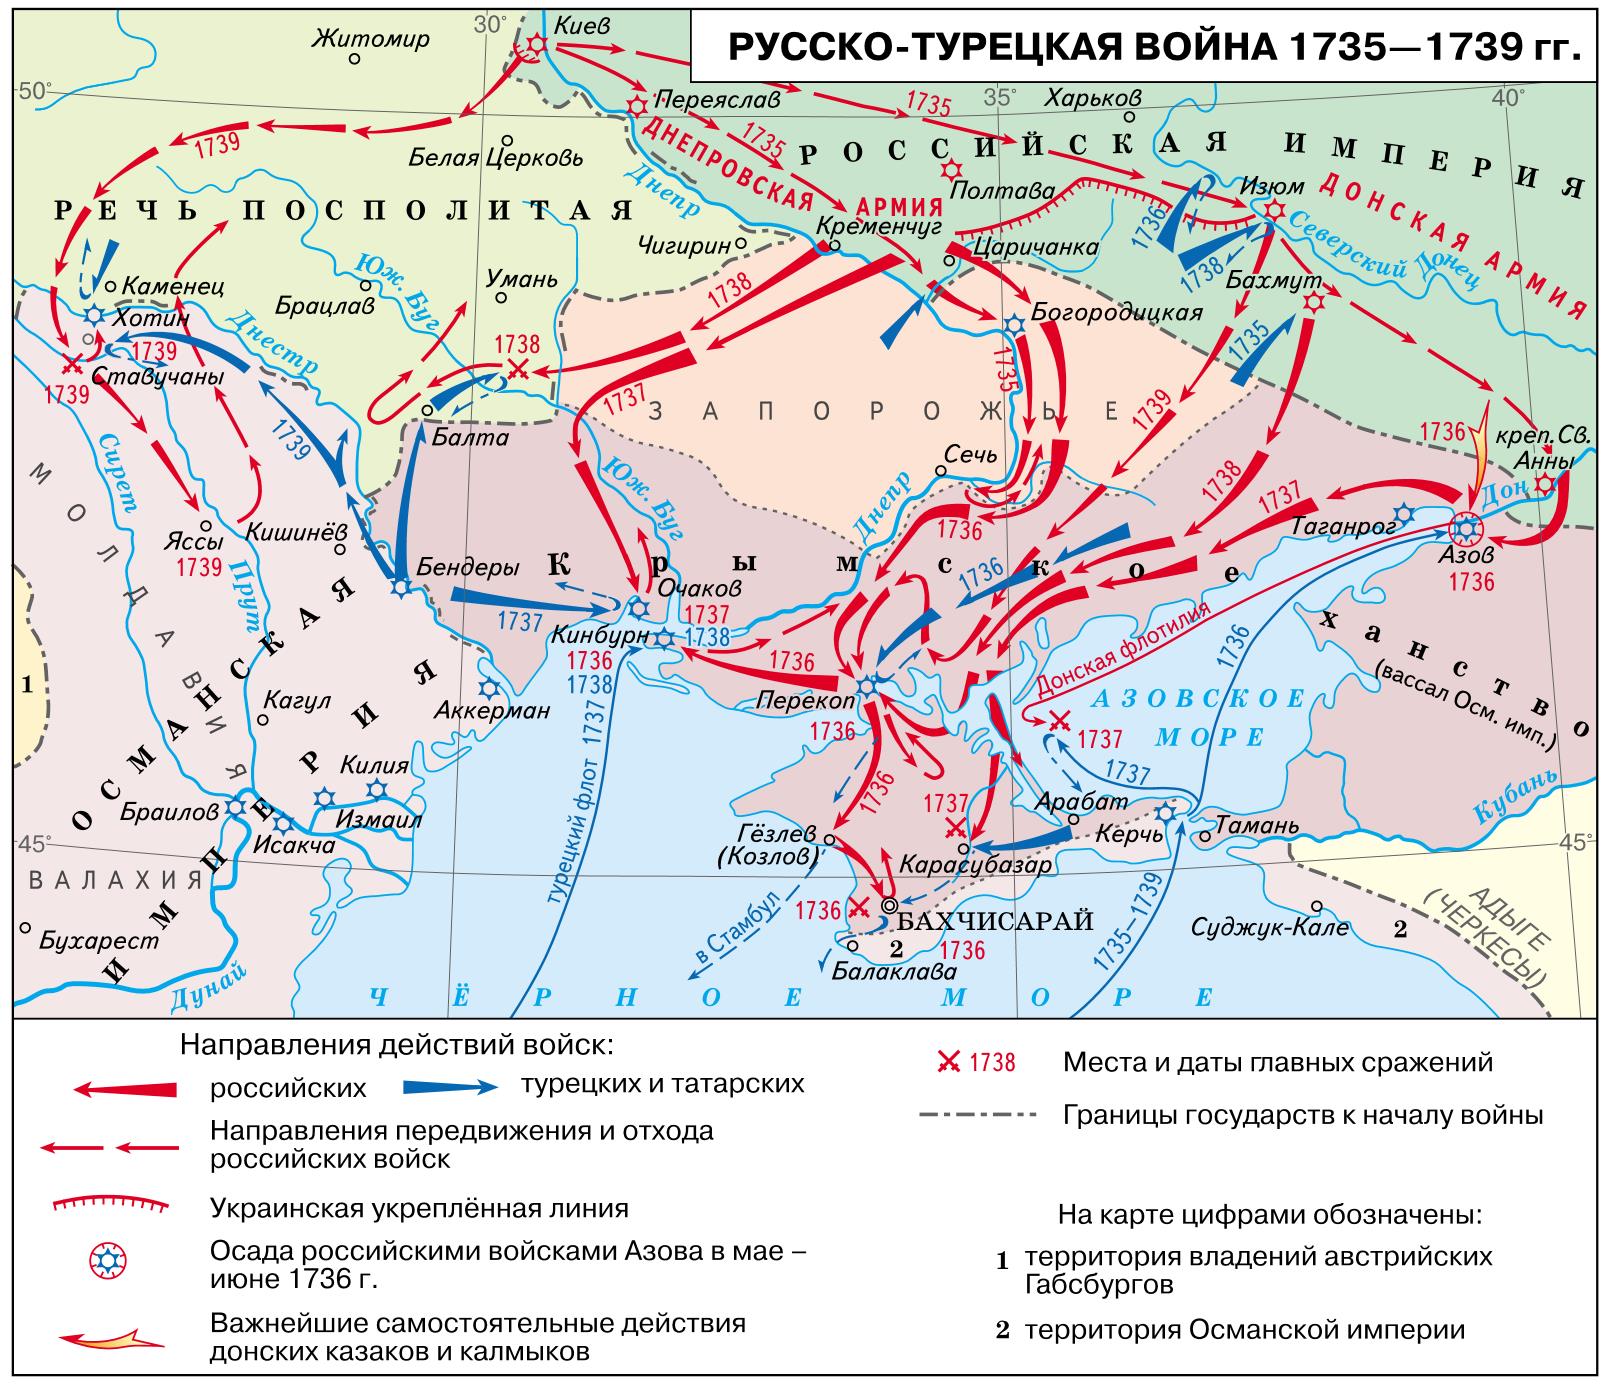 Русский полководец времен анны иоанновны 5. Карта русско турецкой войны 1735 1739 года.